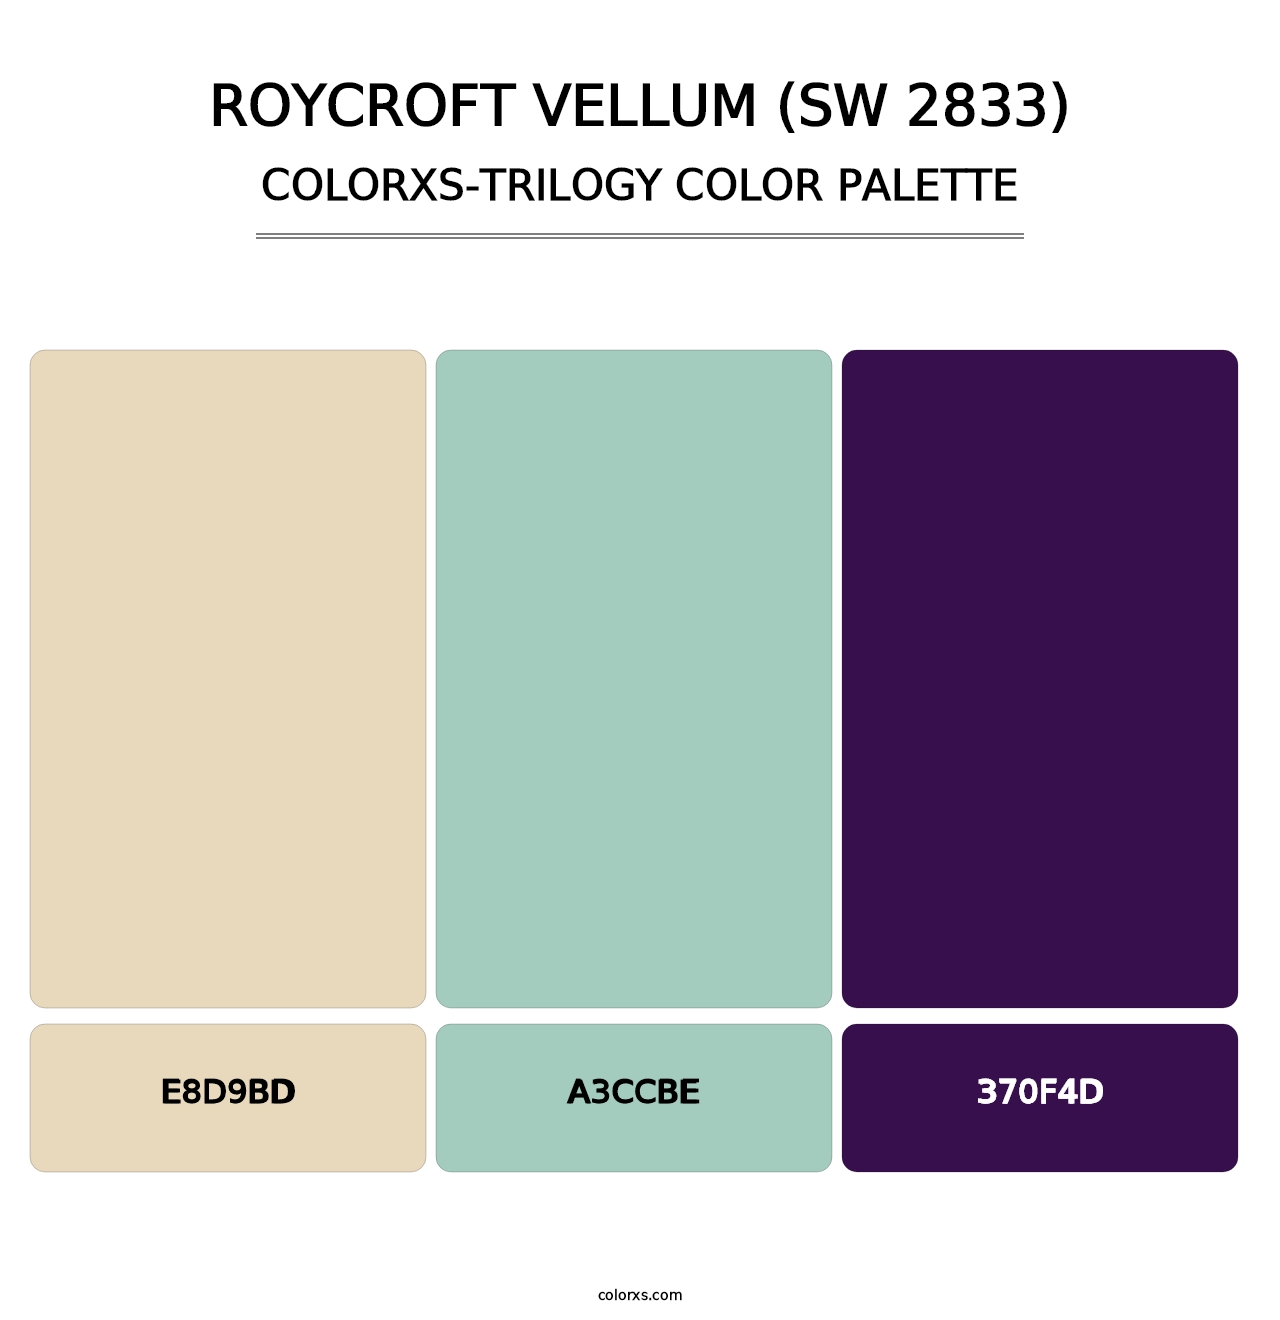 Roycroft Vellum (SW 2833) - Colorxs Trilogy Palette